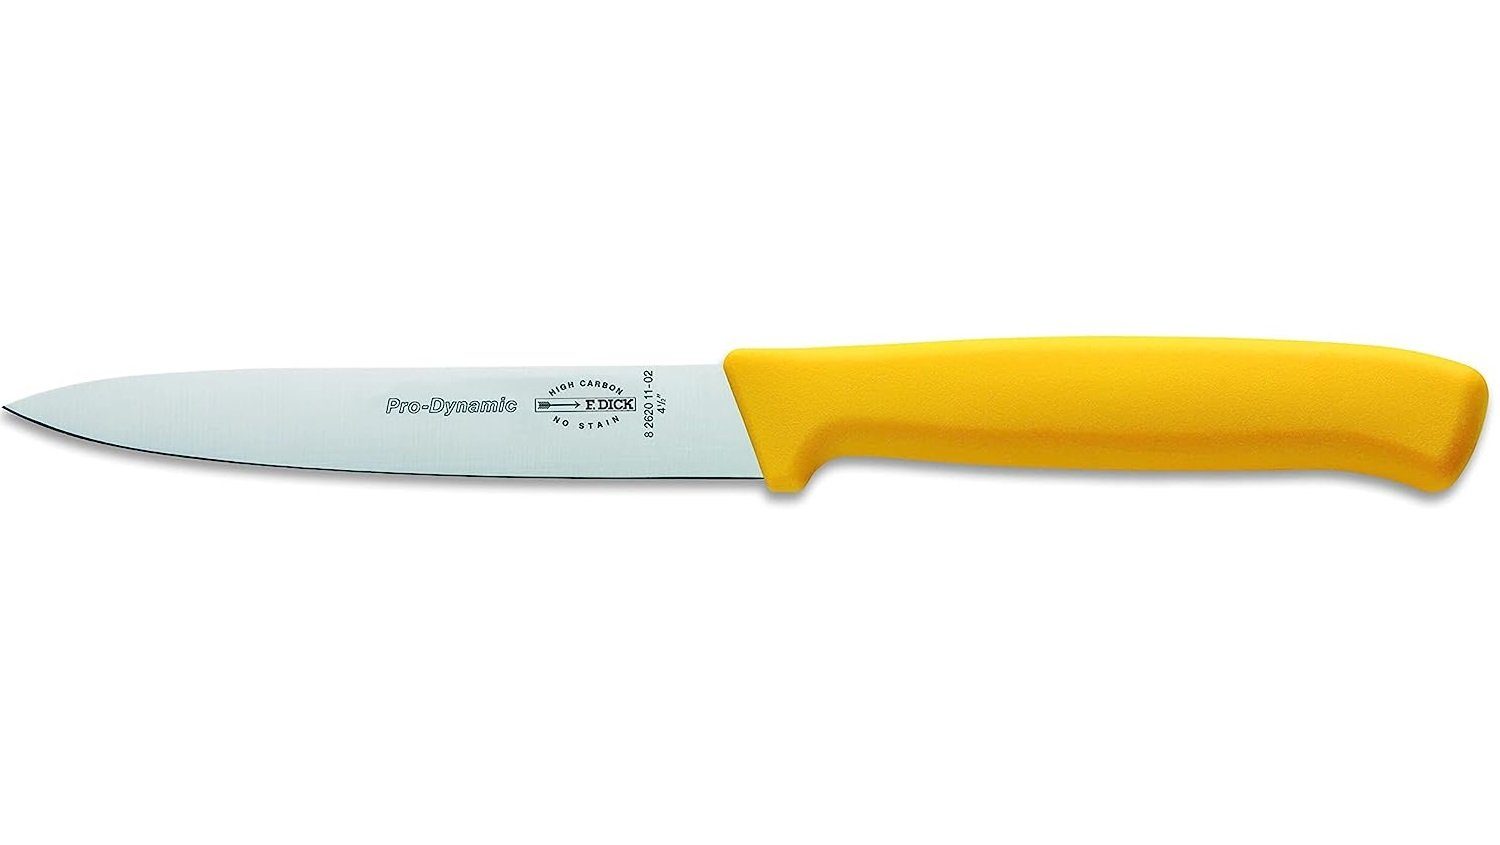 ProDynamic Küchenmesser gelb Universalküchenmesser Kochmesser DICK DICK cm F. F. kleine 11